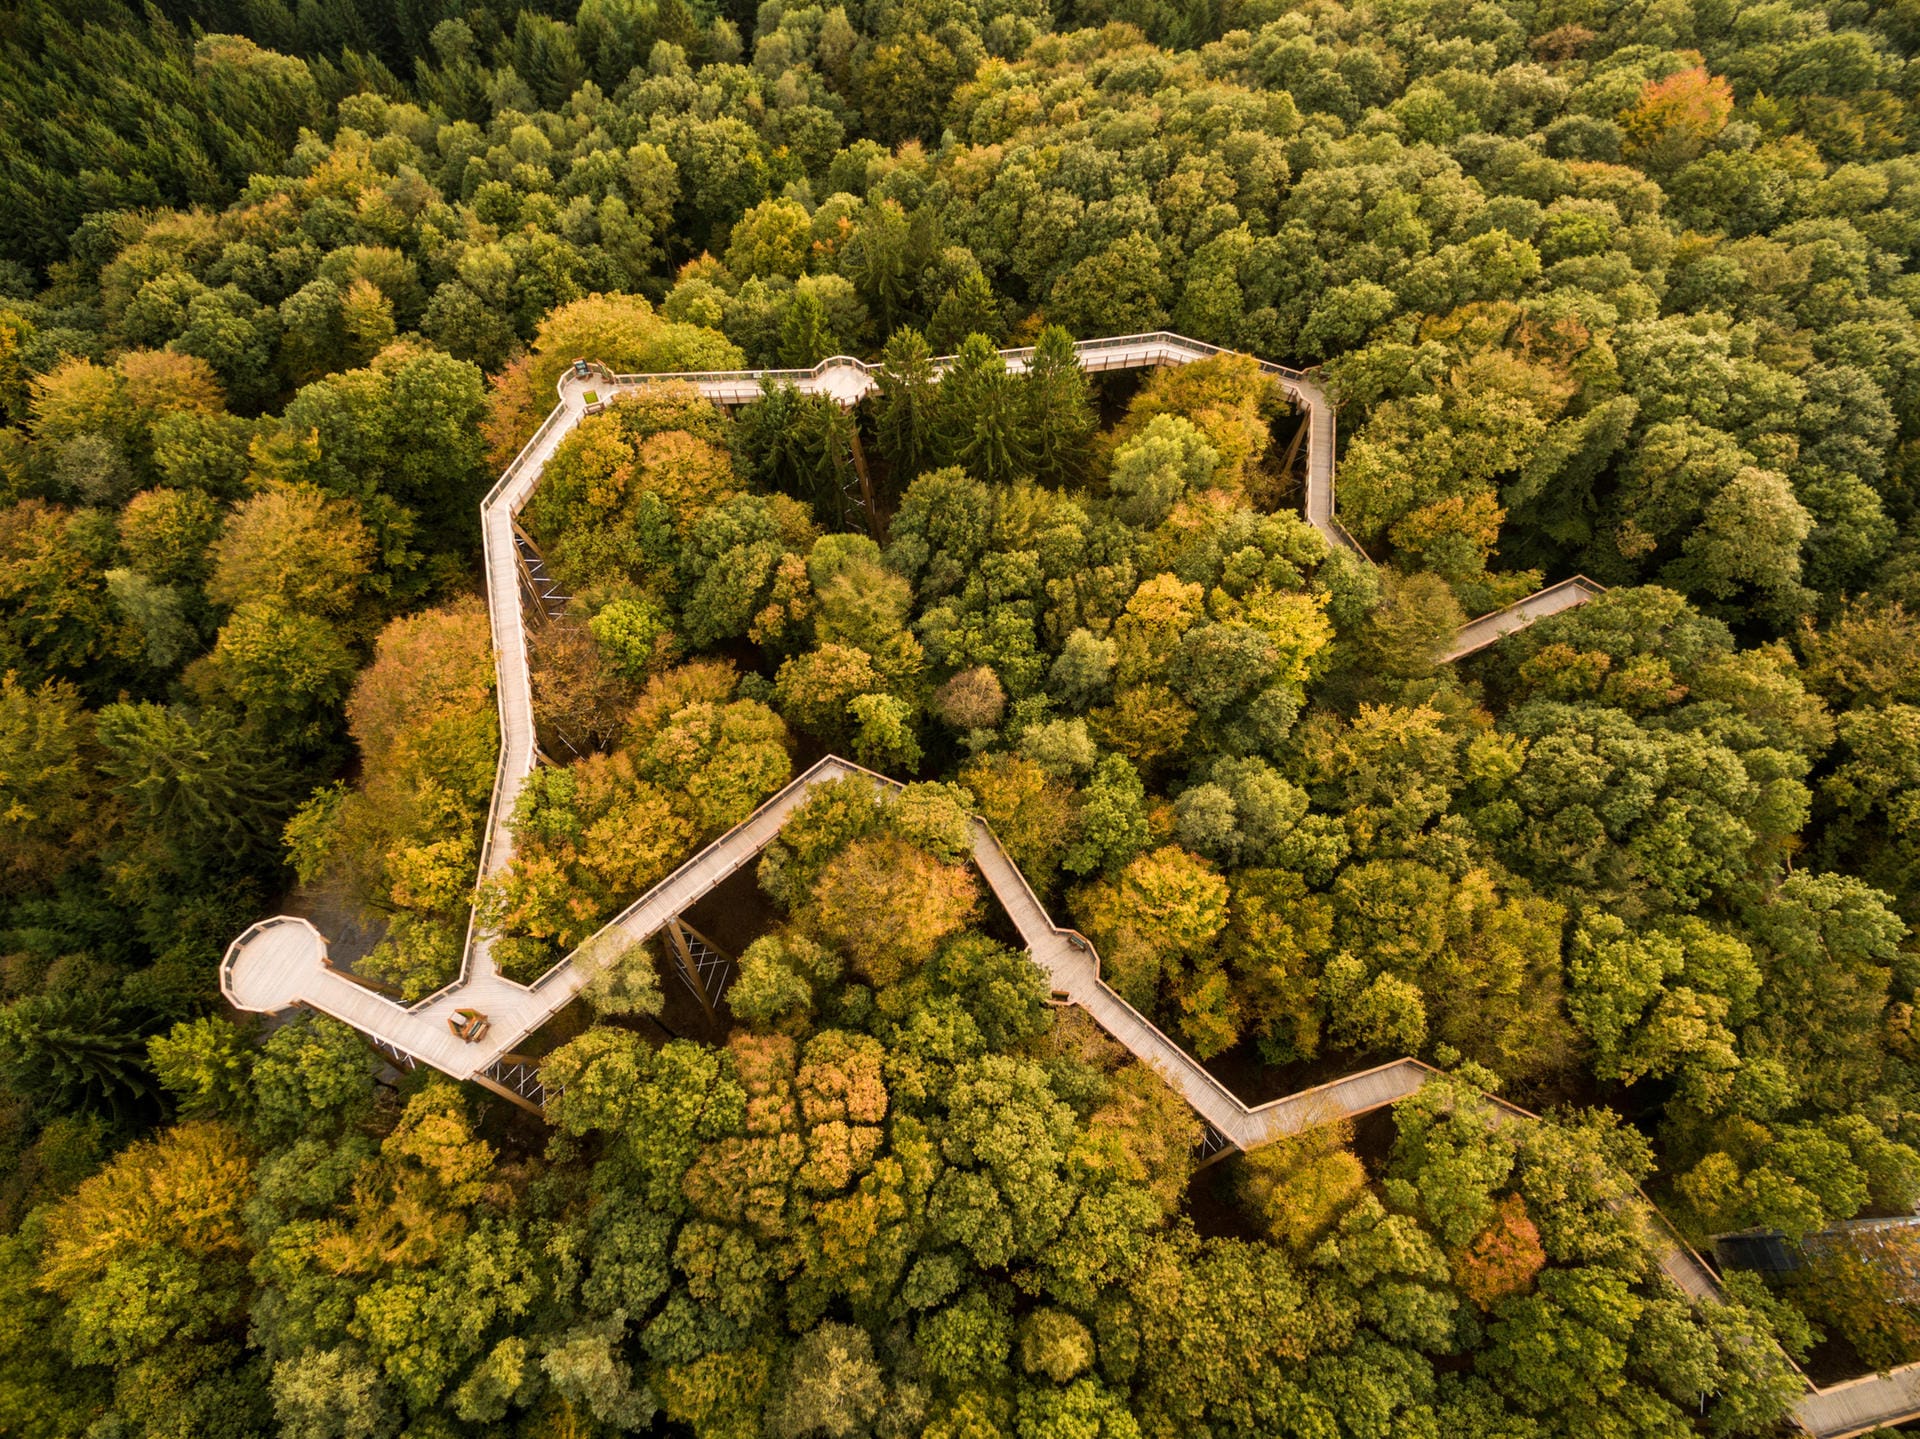 Der Pfad "Panarbora" rund 50 Kilometer östlich von Köln bietet an Wissens-Stationen Einblick in Flora und Fauna des umliegenden Waldes.